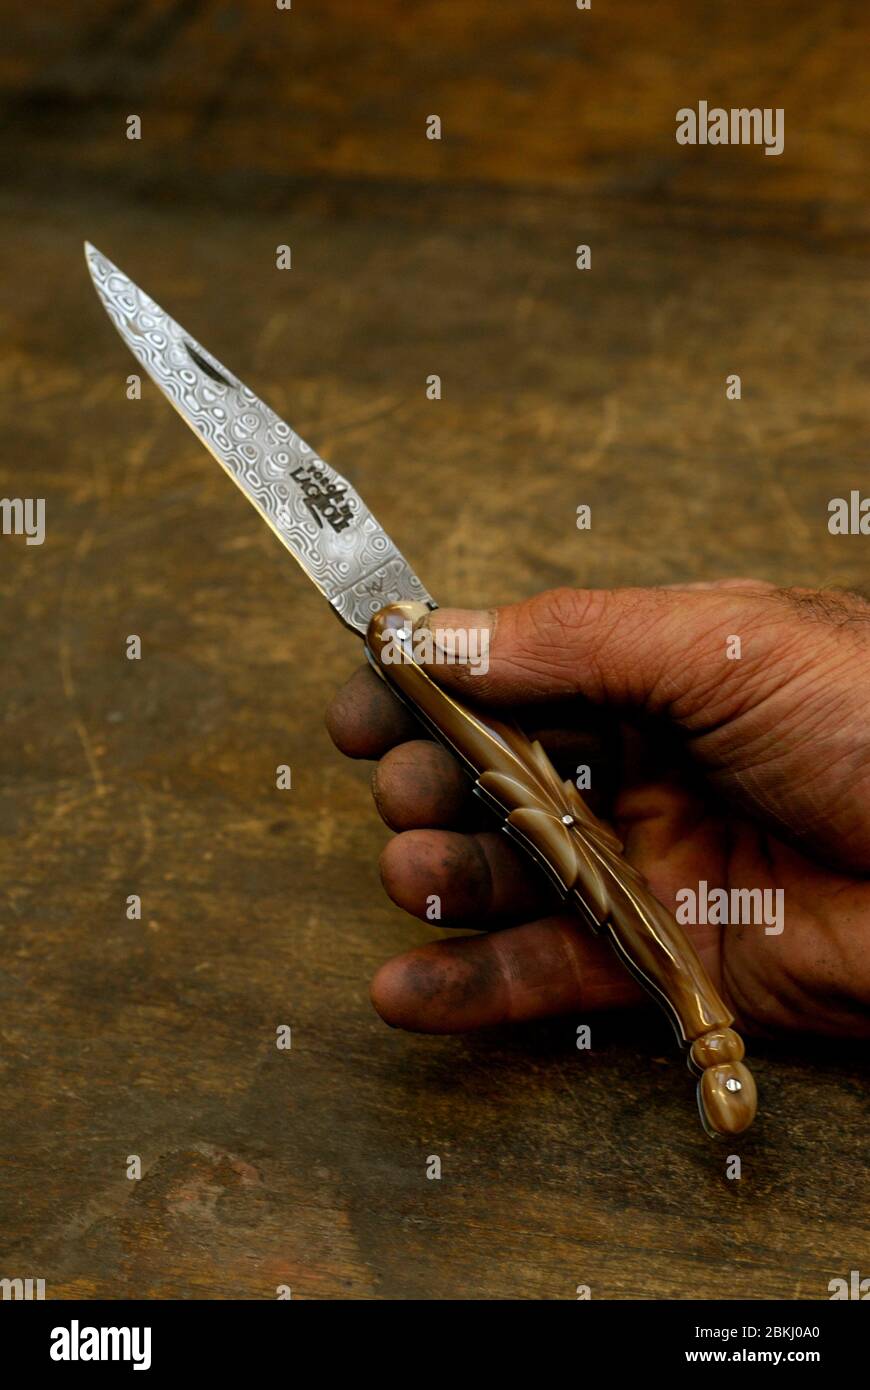 France, Aubrac plateau, manufactures laguiole knives Stock Photo